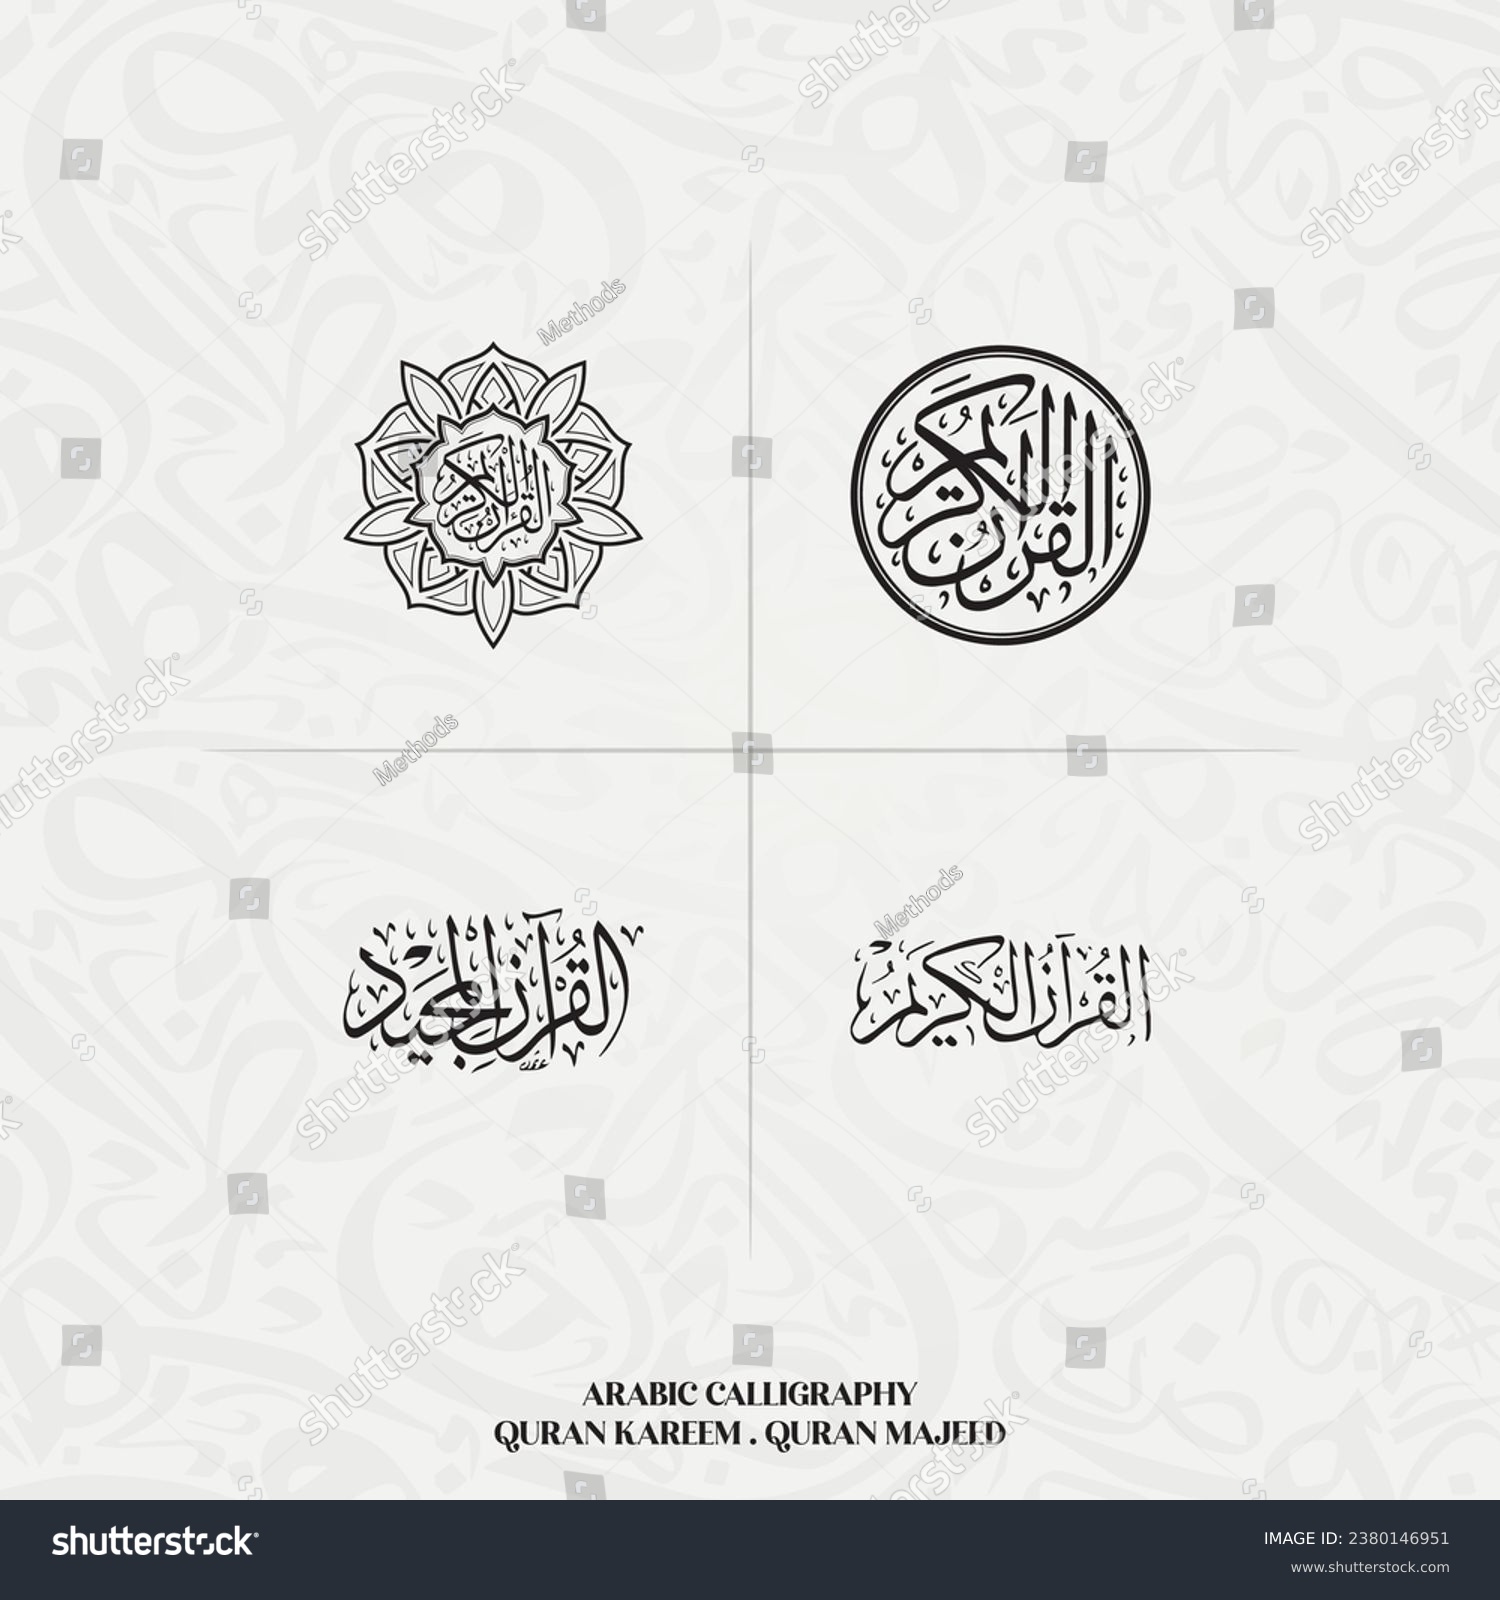 SVG of Al Quran Al Kareem Islamic Calligraphy, The Muslim Holy Book Quran kareem  Quran Majeed.  svg